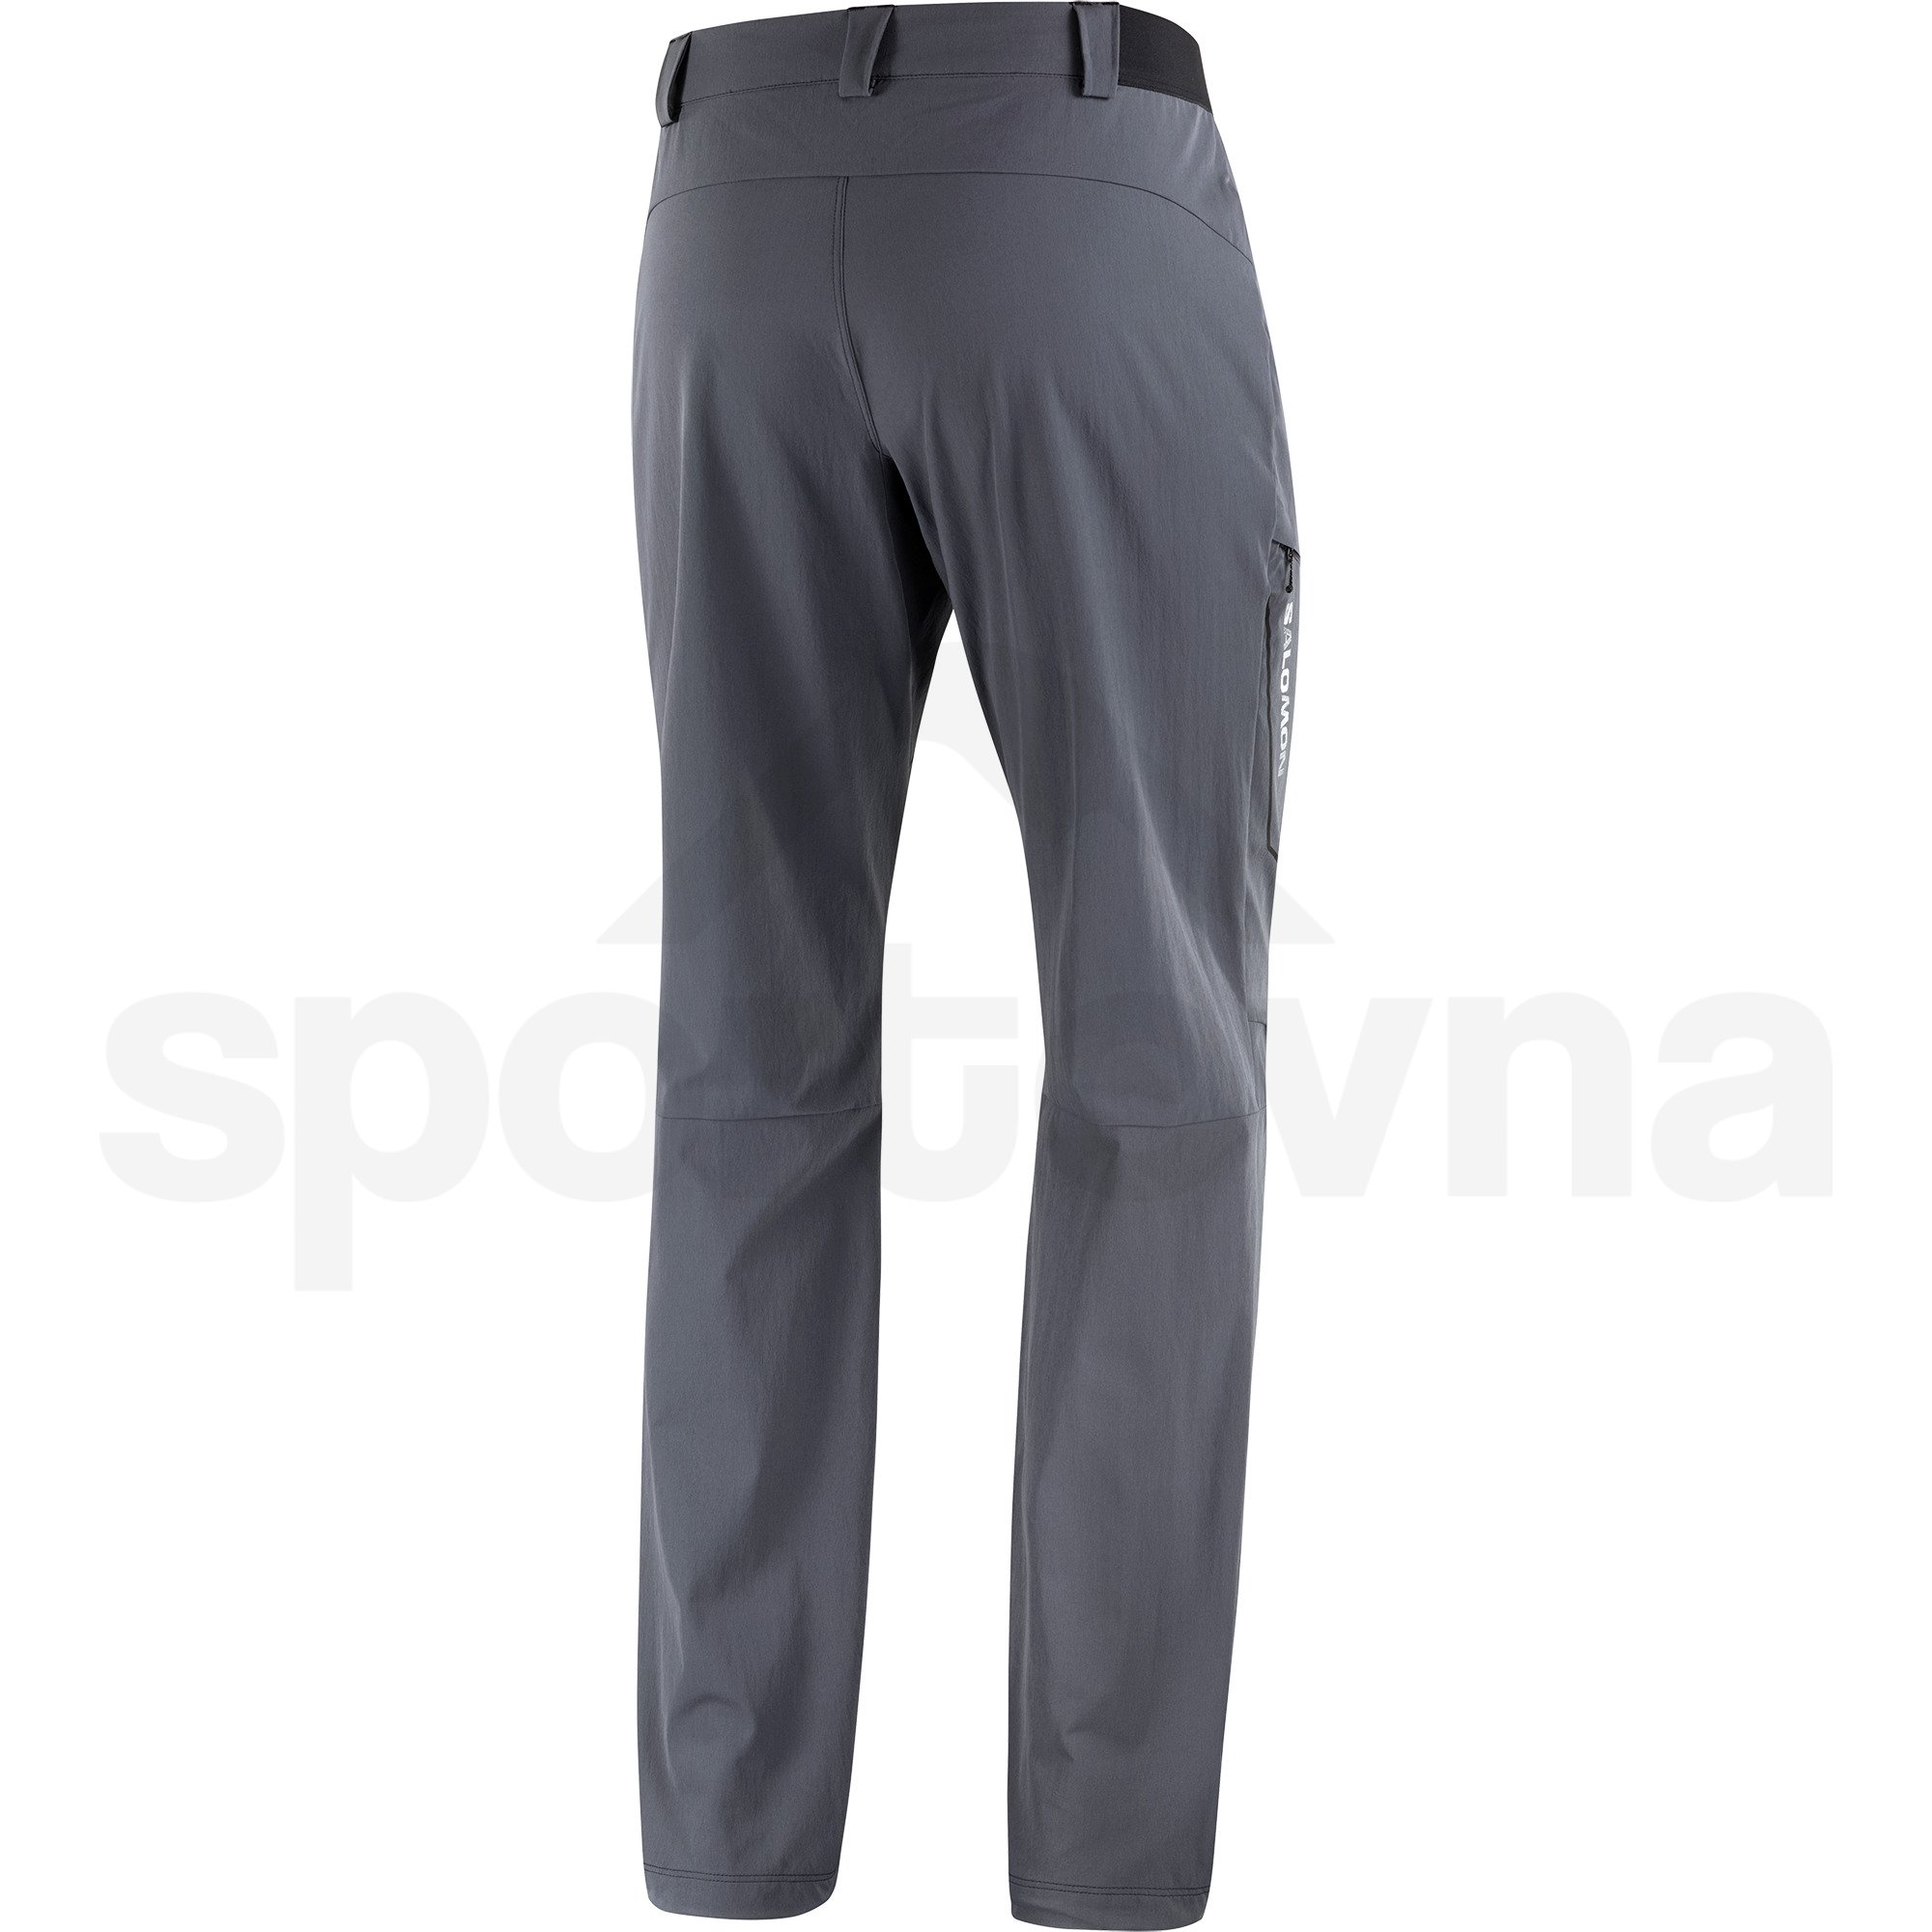 Kalhoty Salomon Wayfarer Pants M - šedá (zkrácená délka)